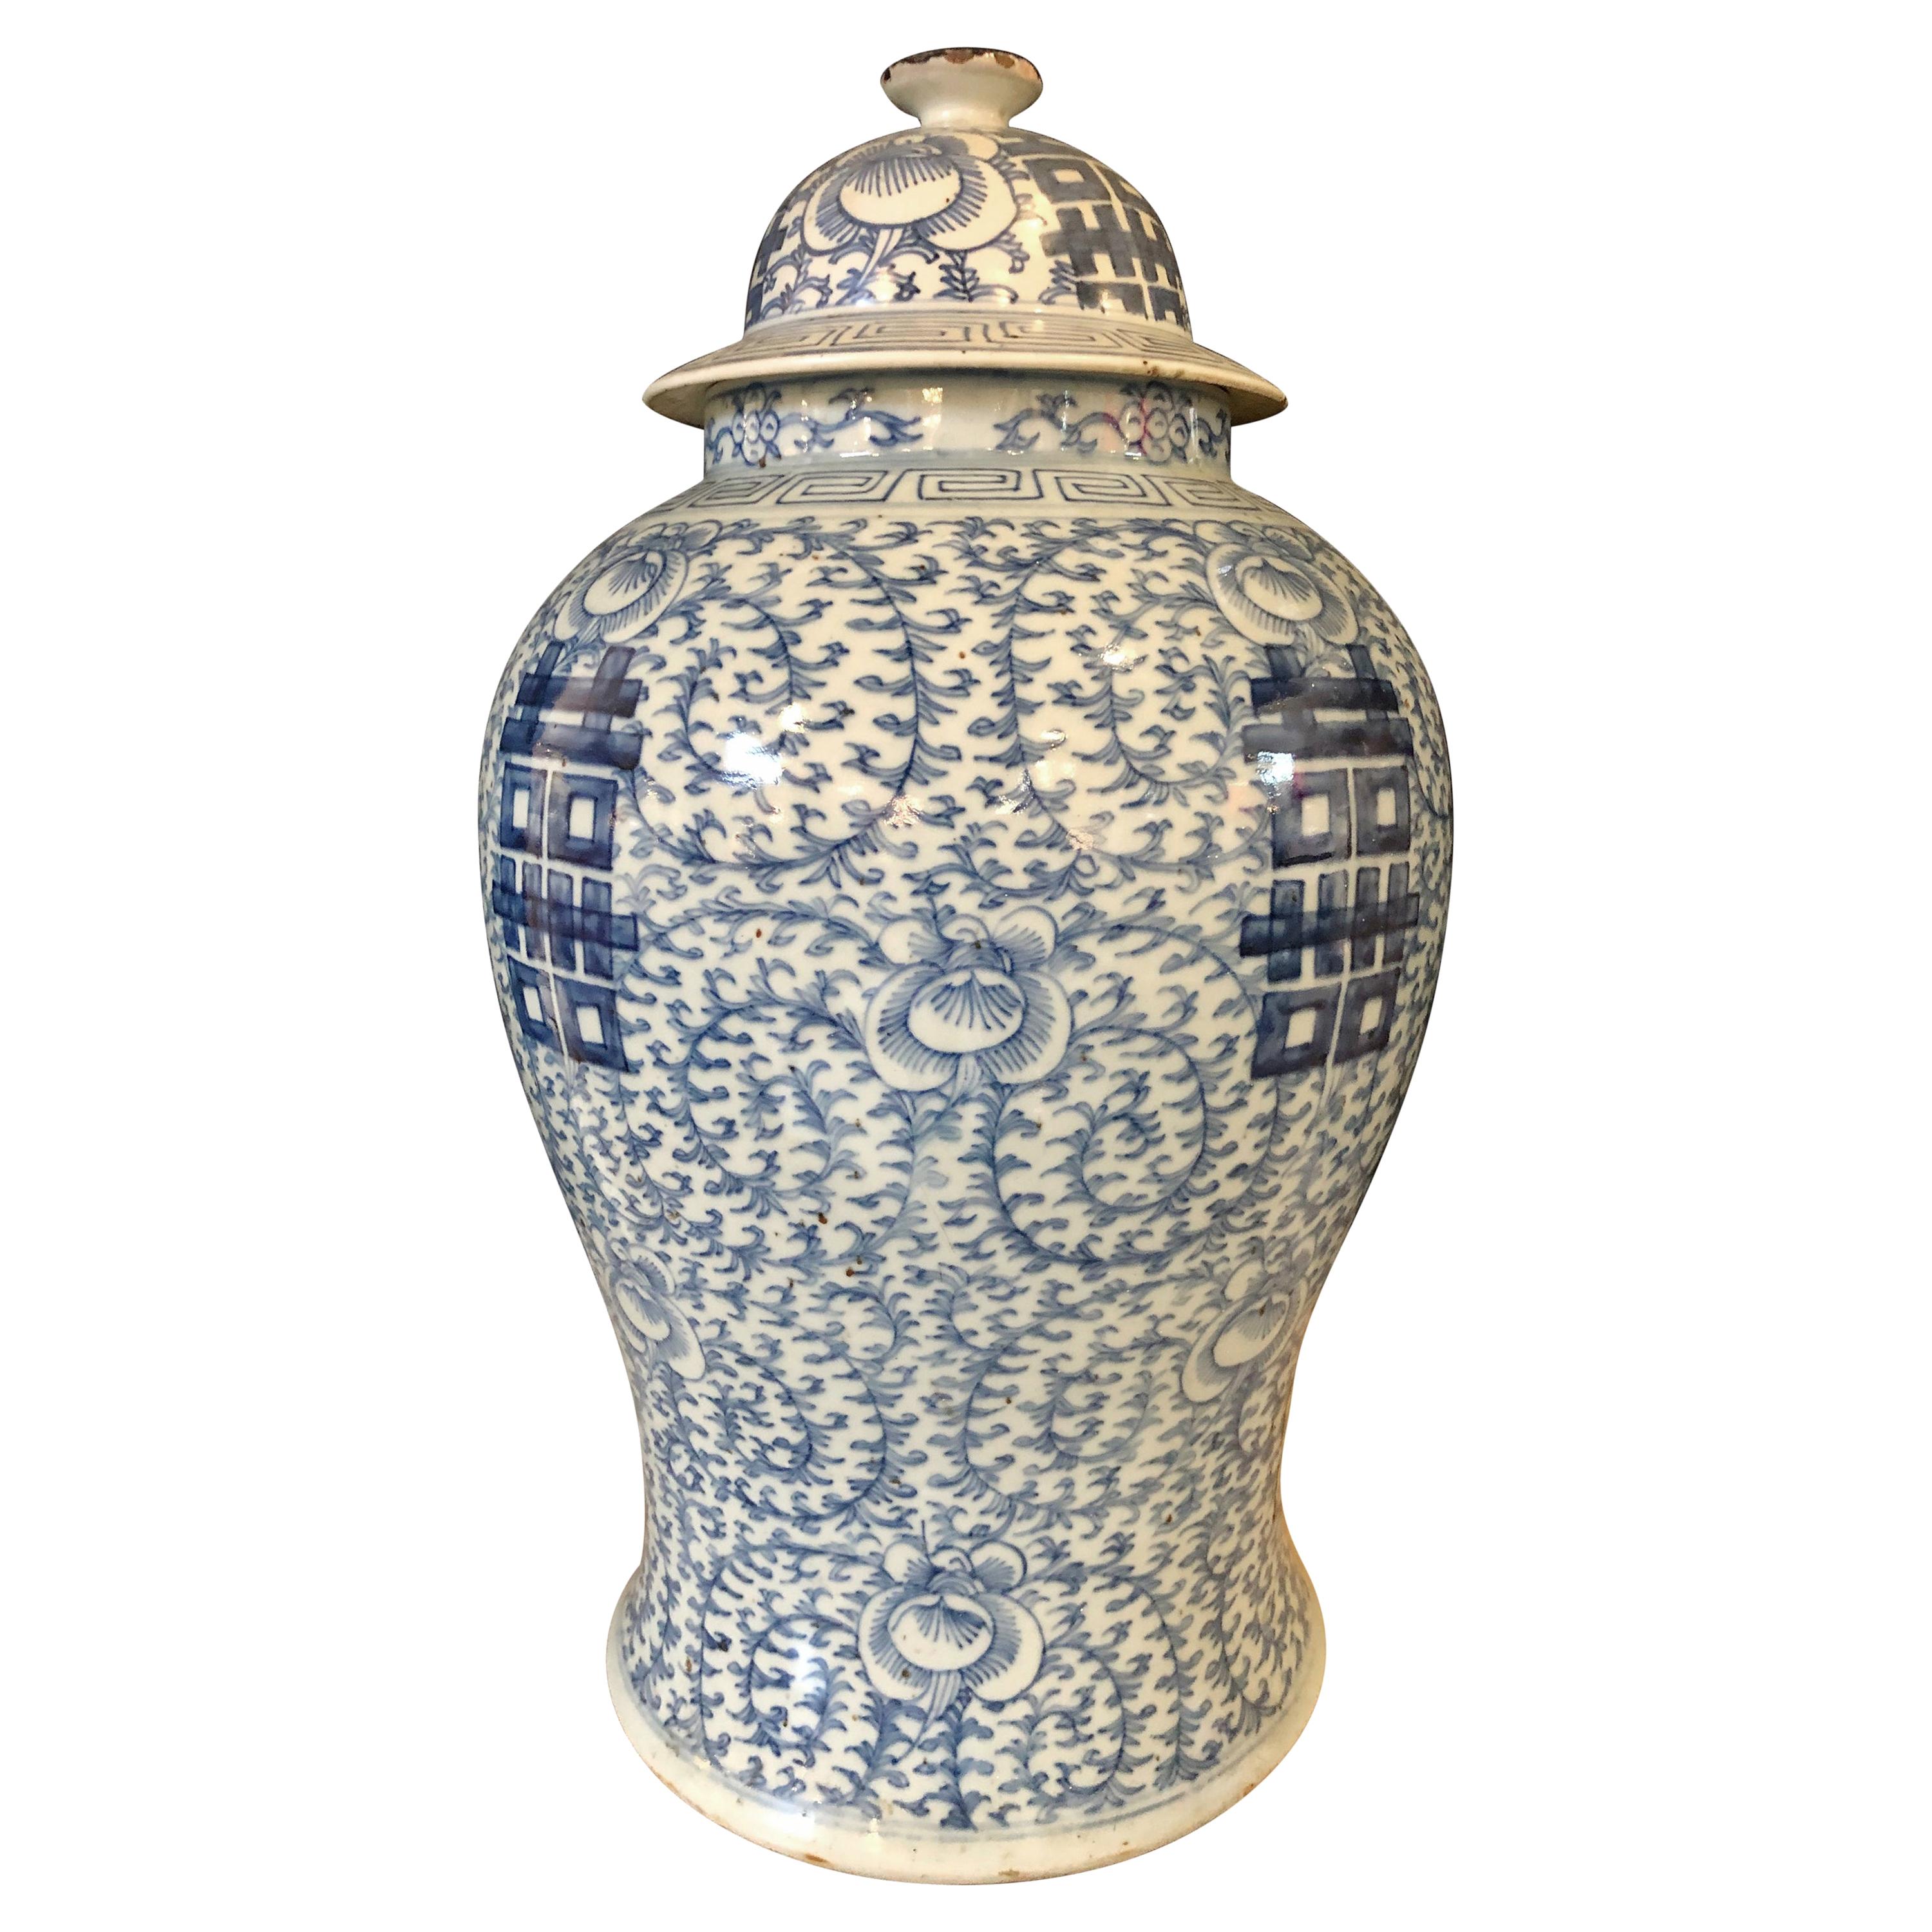 Vasetto, vaso o urna cinese con coperchio blu e bianco, firmata sul fondo